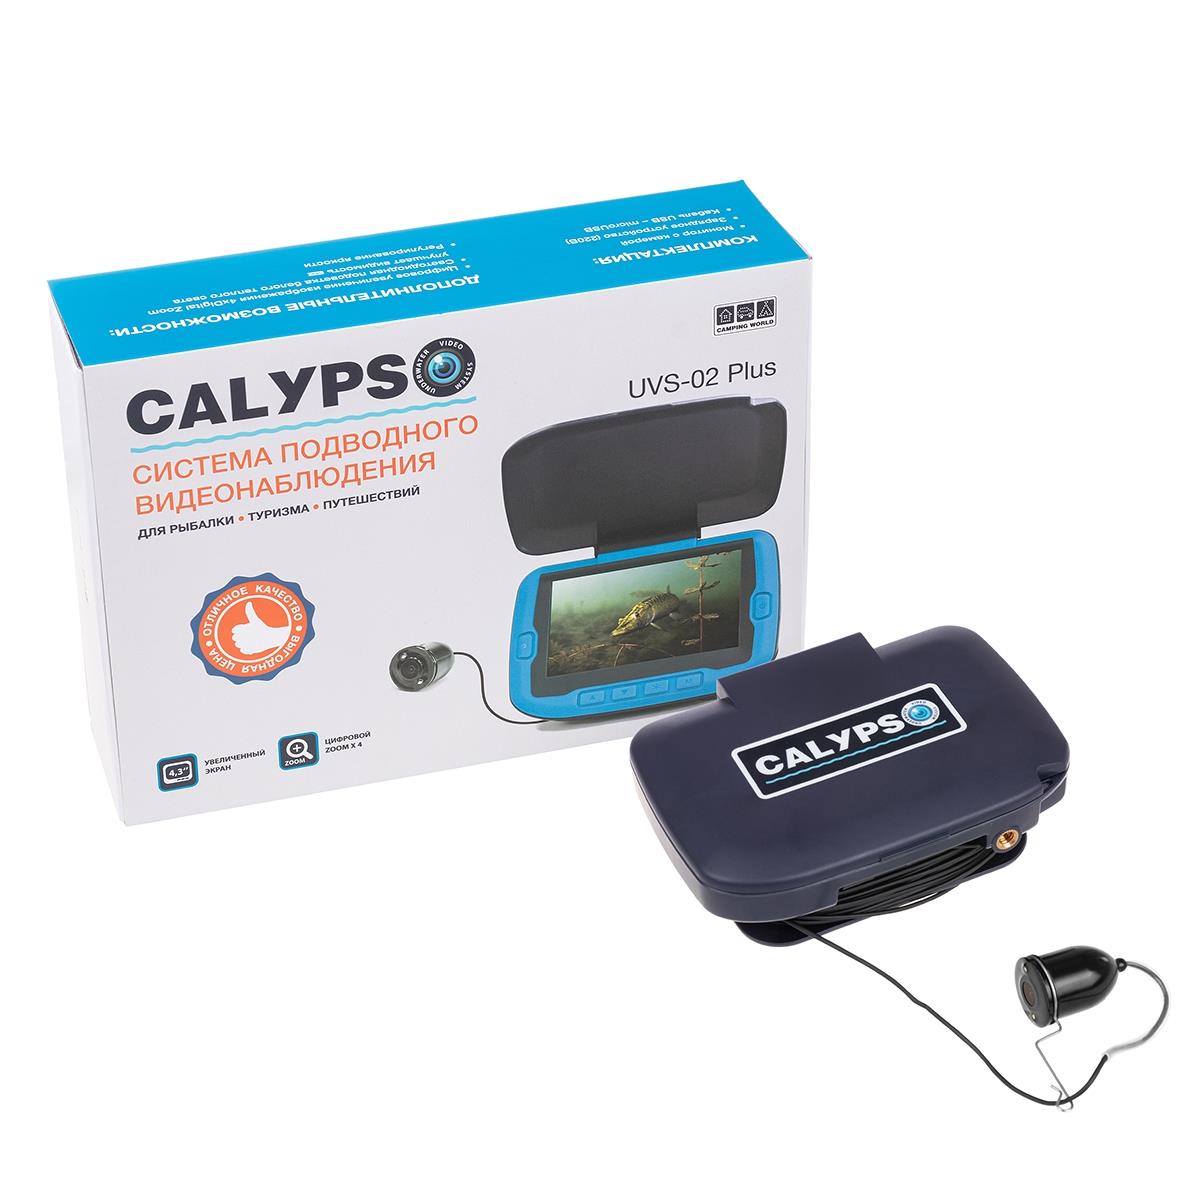 Подводная видеокамера CALYPSO UVS-02 PLUS (FDV-1112) органайзер на солнцезащитный козырек skyway